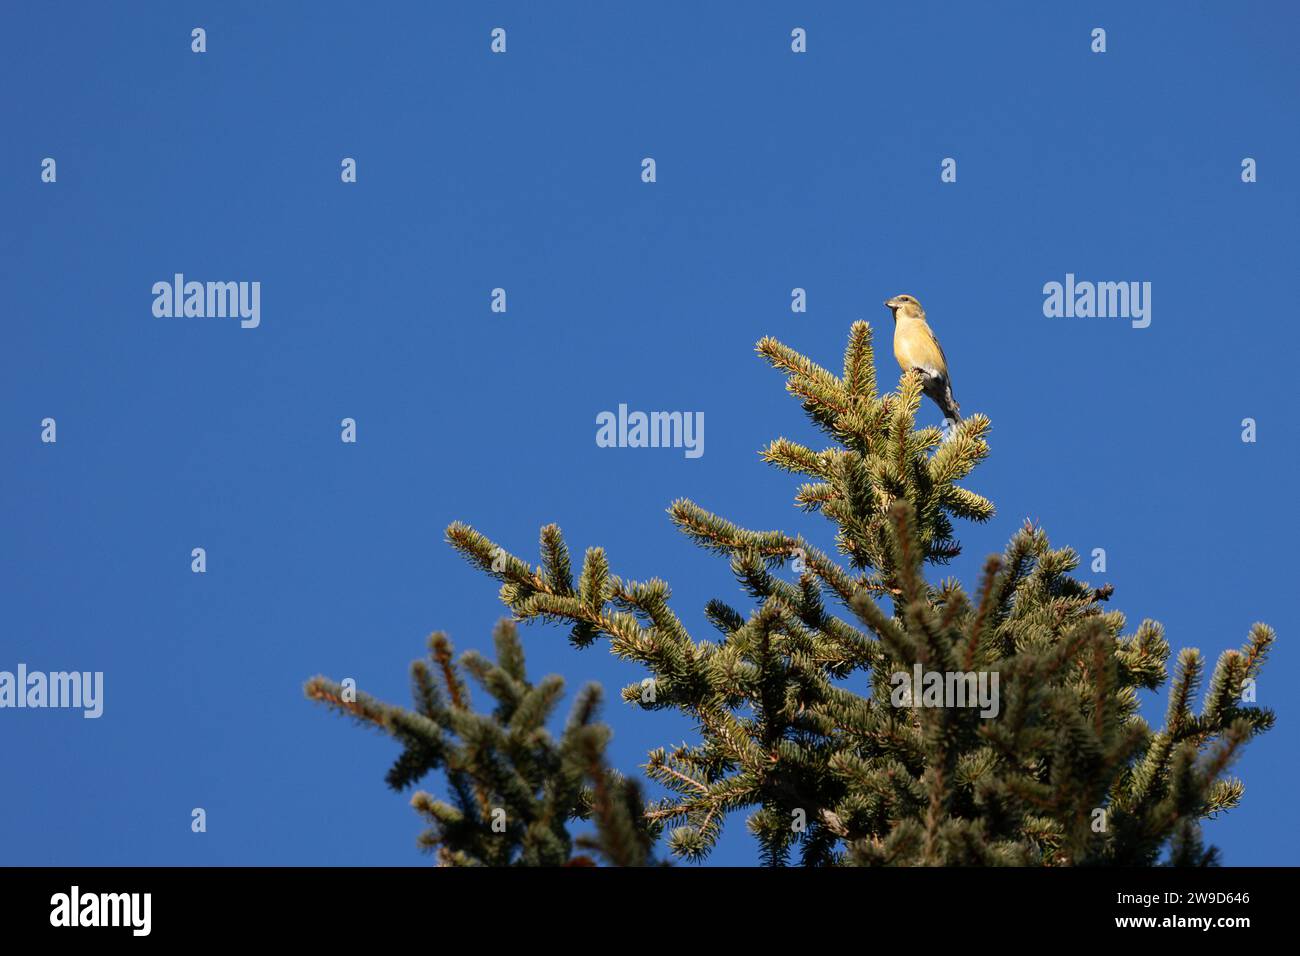 Un bec-croisé femelle jaune (loxia curvirostra) se perche haut au sommet d'un conifère soufflé par le vent dans la région montagneuse de dolomite en Italie. Banque D'Images